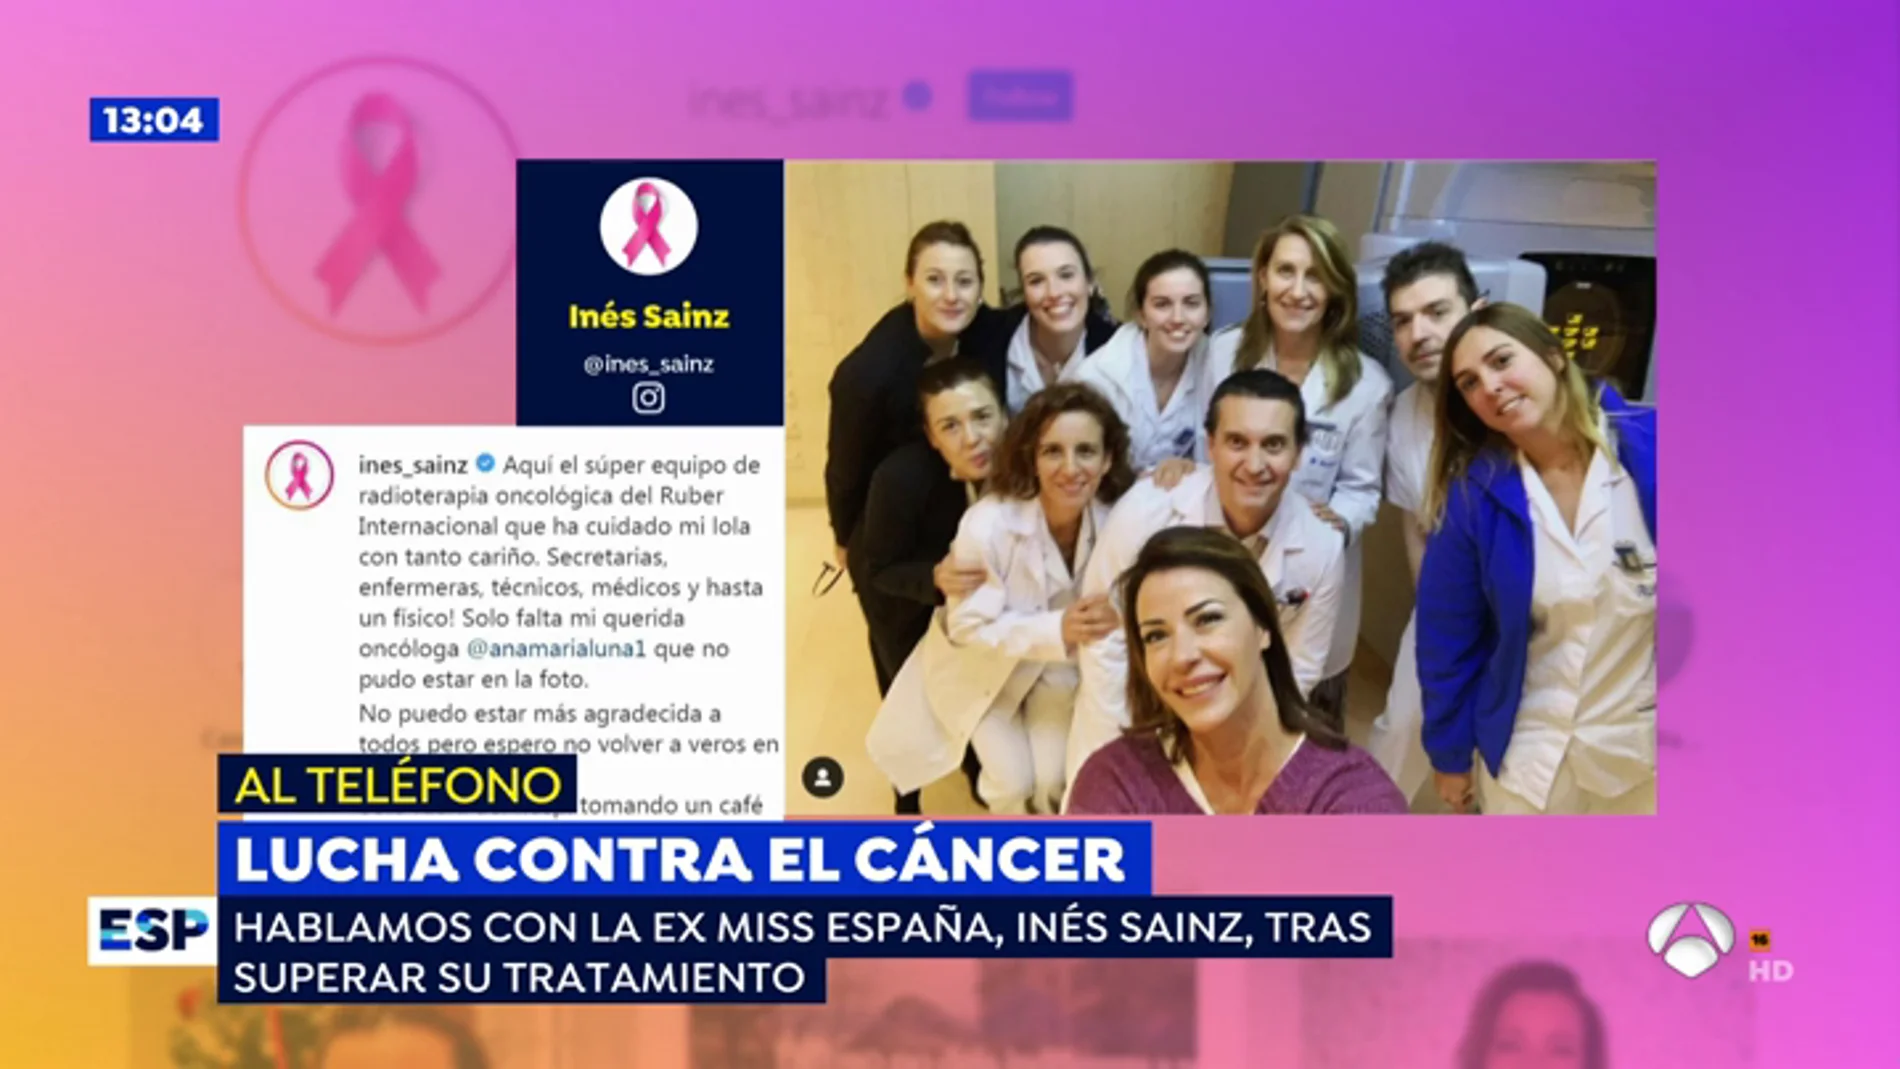 La ex miss España Ines Sainz: "Si no hubiera ido al ginecólogo, quizás estaría contando otra cosa muy diferente"